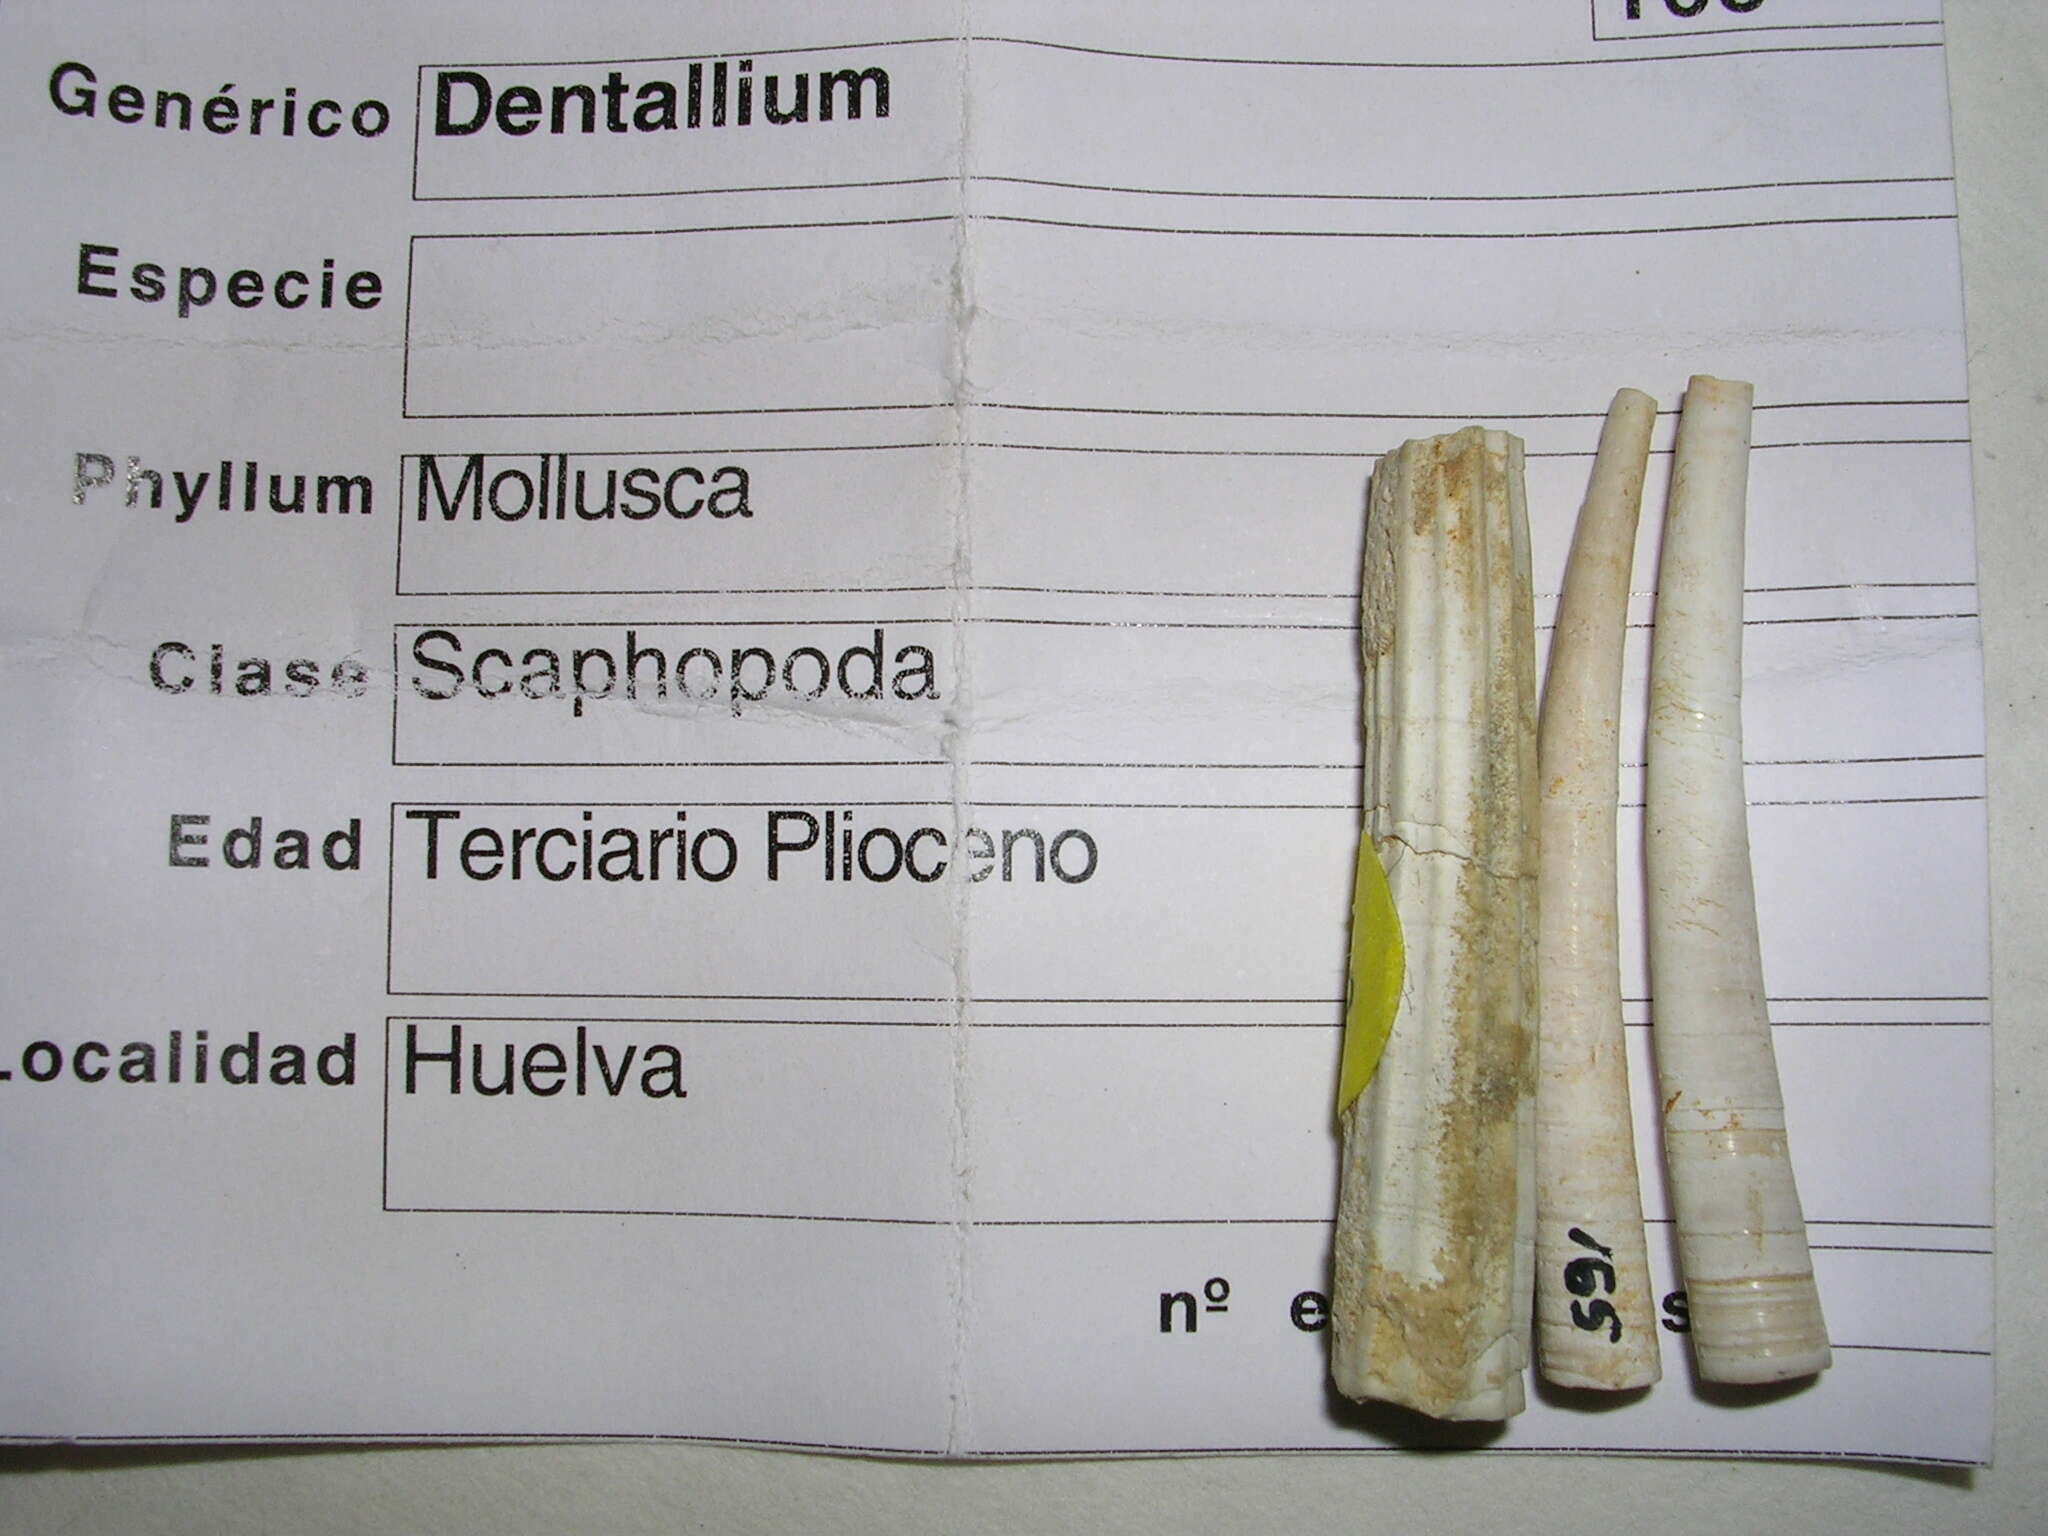 Image of Dentalium Linnaeus 1758